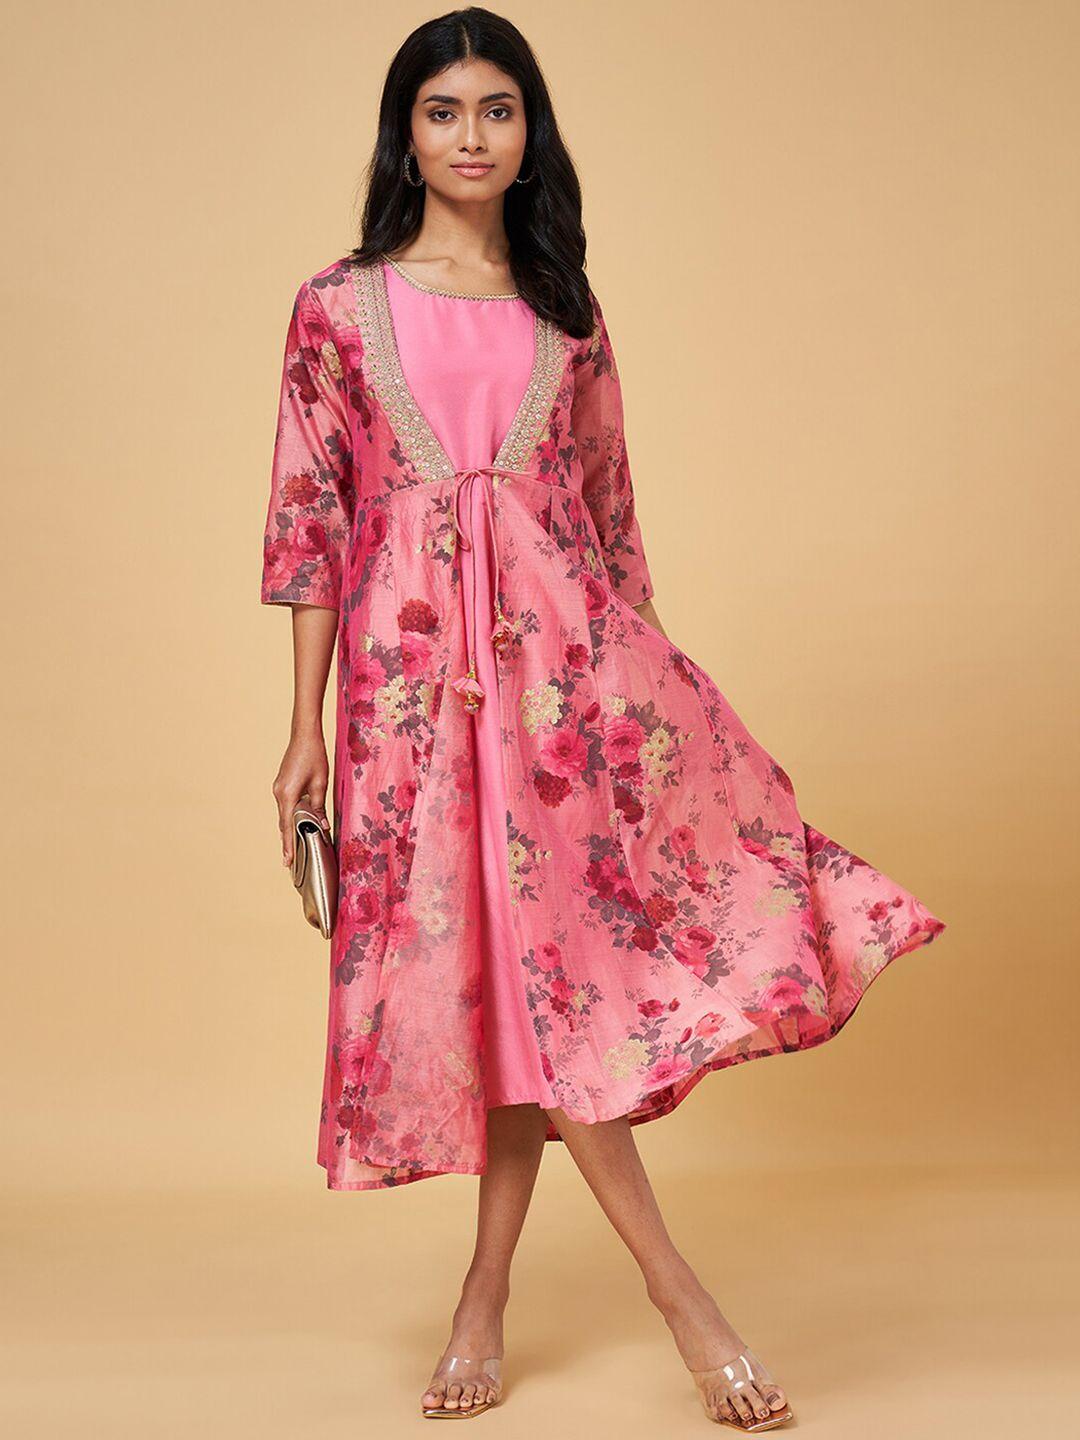 rangmanch by pantaloons pink floral print a-line midi dress